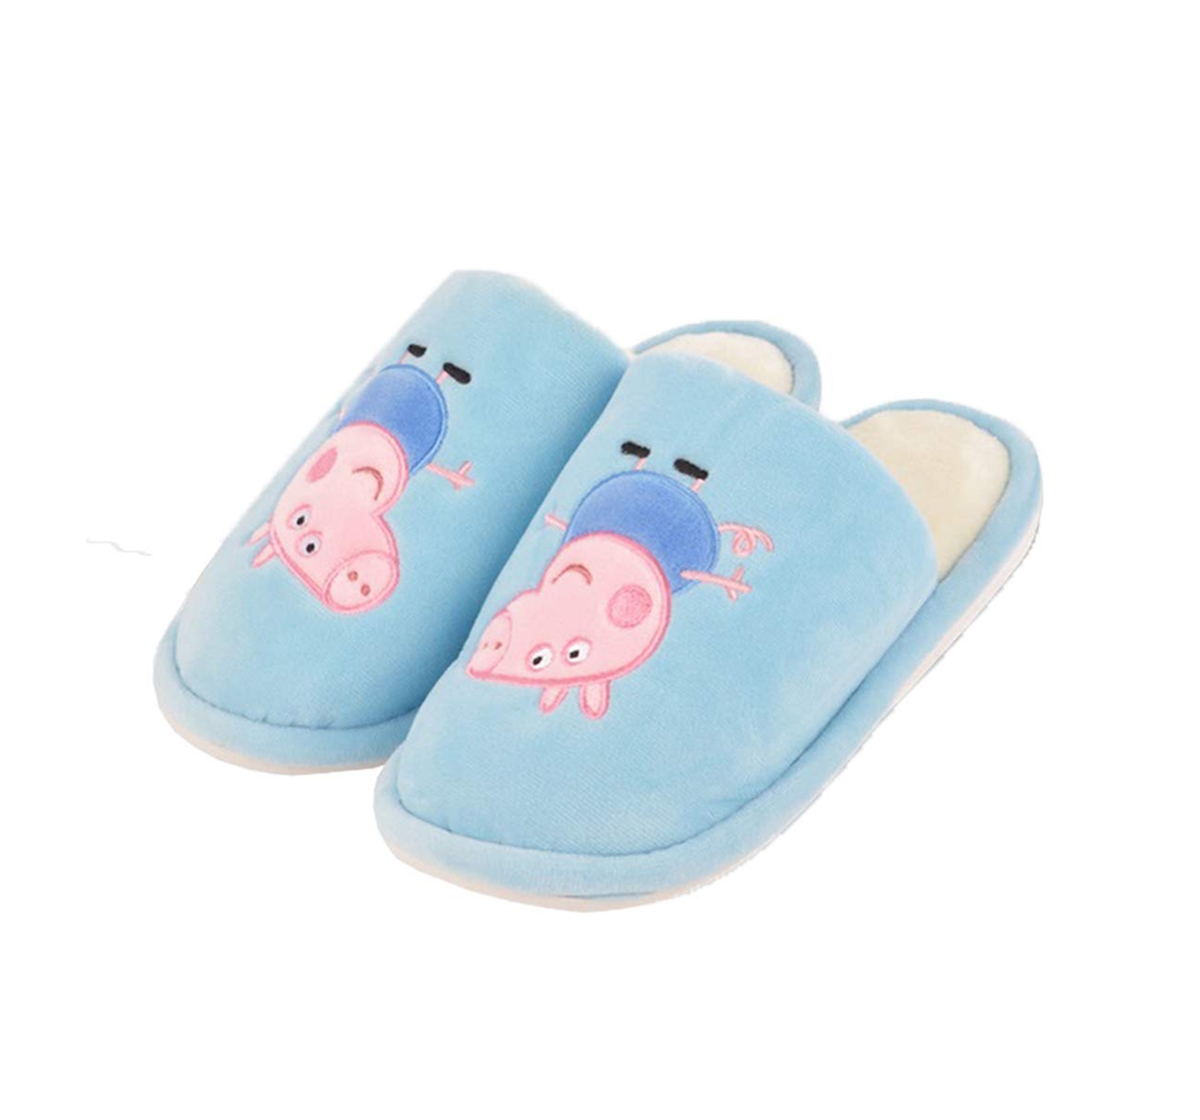 Peppa Pig | Peppa Pig Slipper Plush Accessory for Girls age 3Y+ 22 Cm (Blue) 0